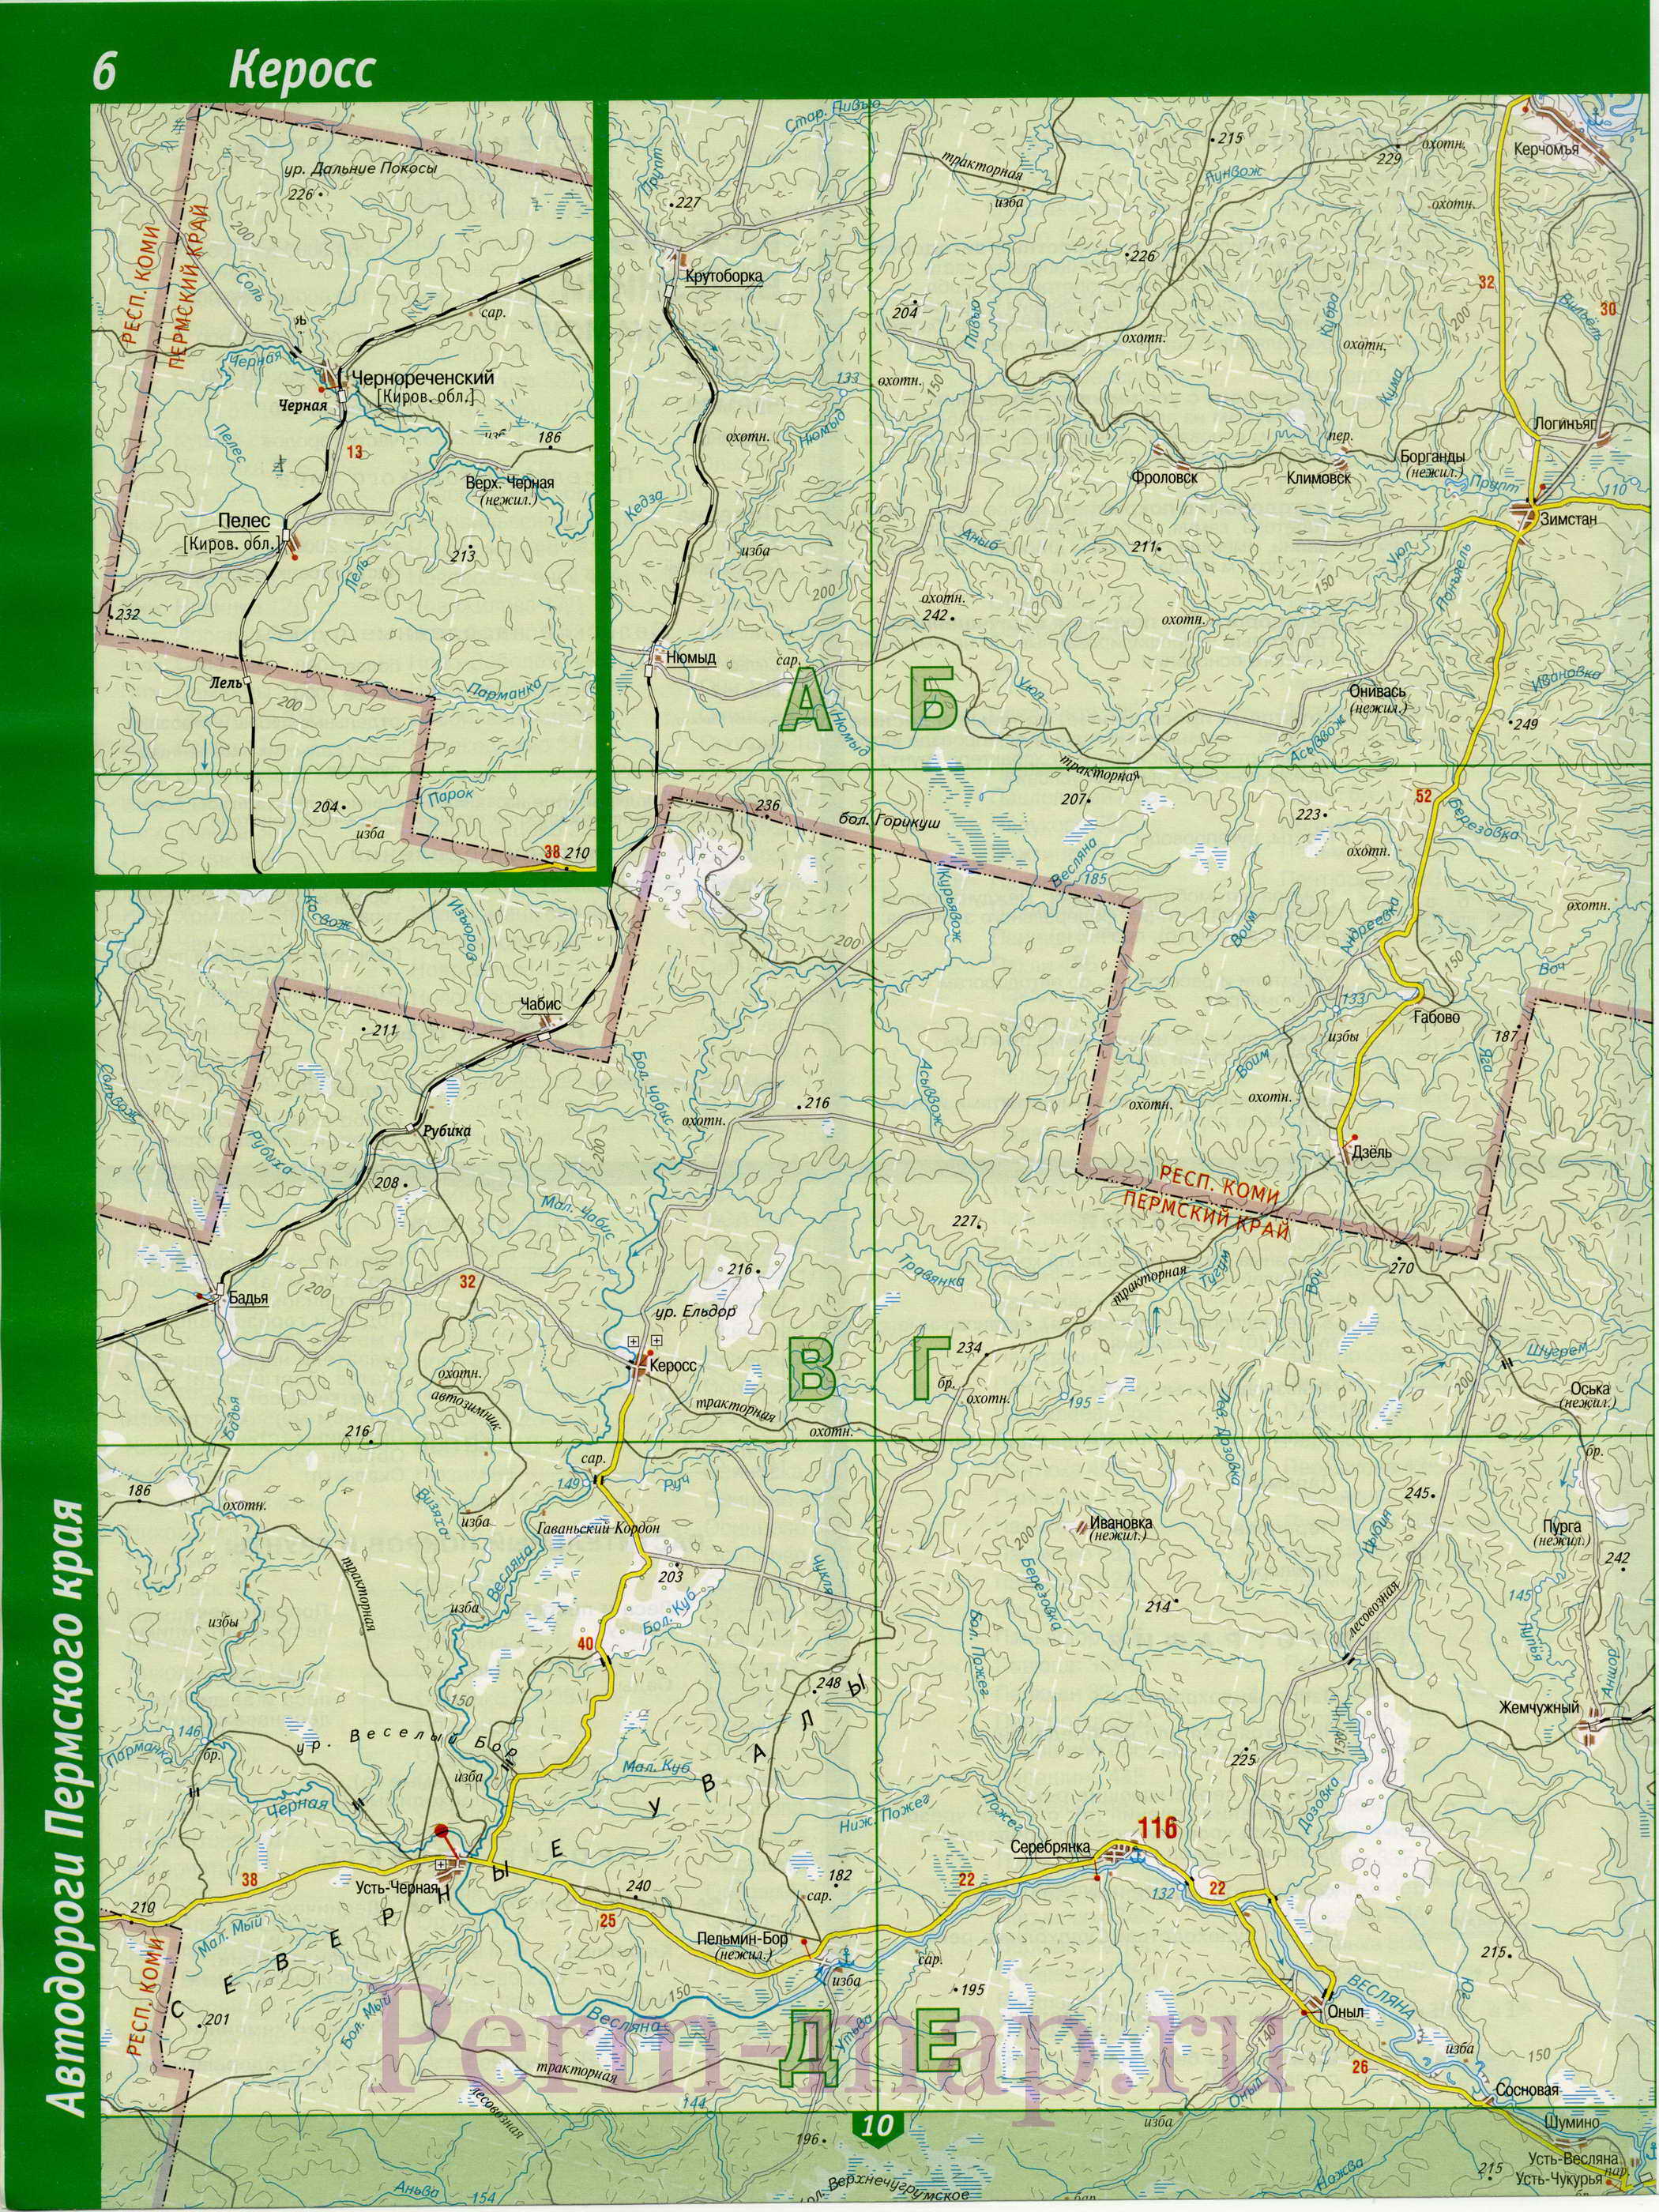 Гайнский район Коми-Пермяцкого автономного округа - топографическая карта. карта Гайнского района, A0 - 